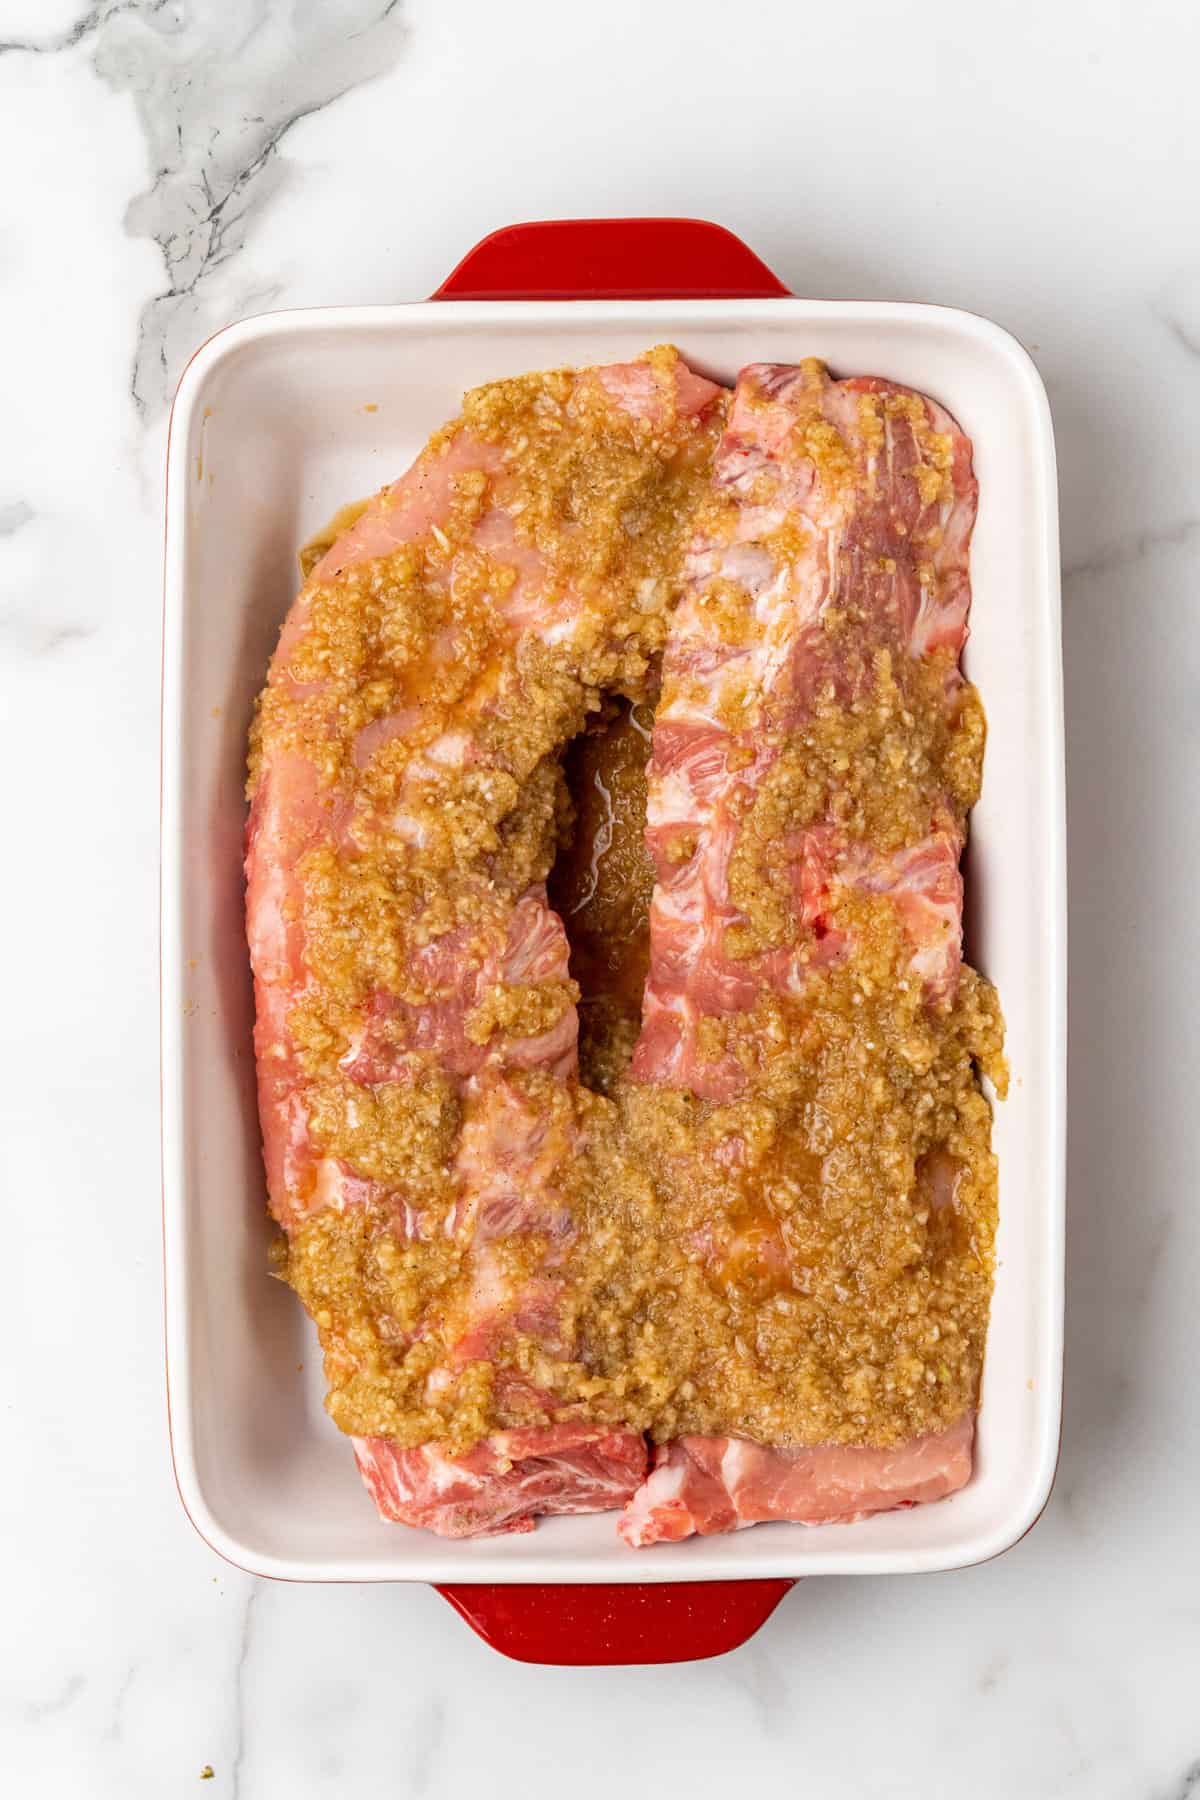 apre pork ribs marinading ina  baking dish.